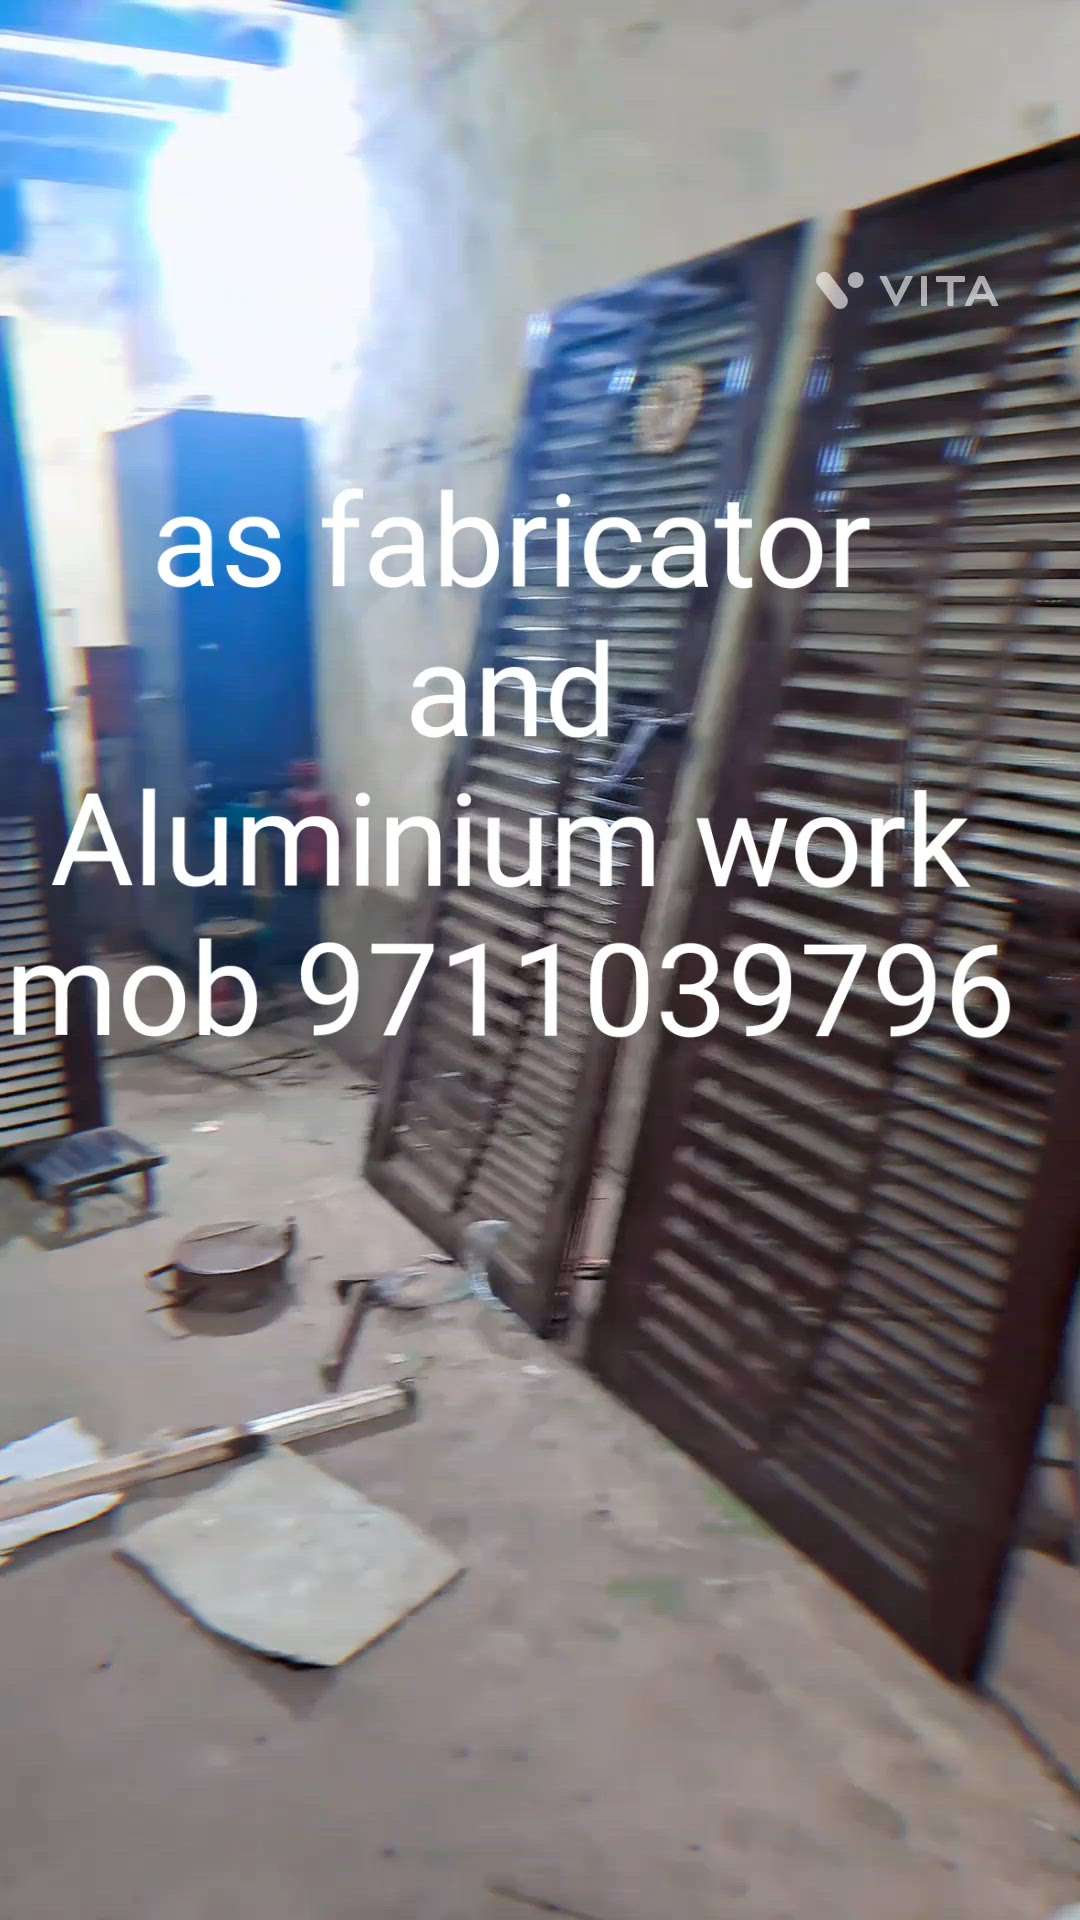 as fabricator and Aluminium work mob 9711039796